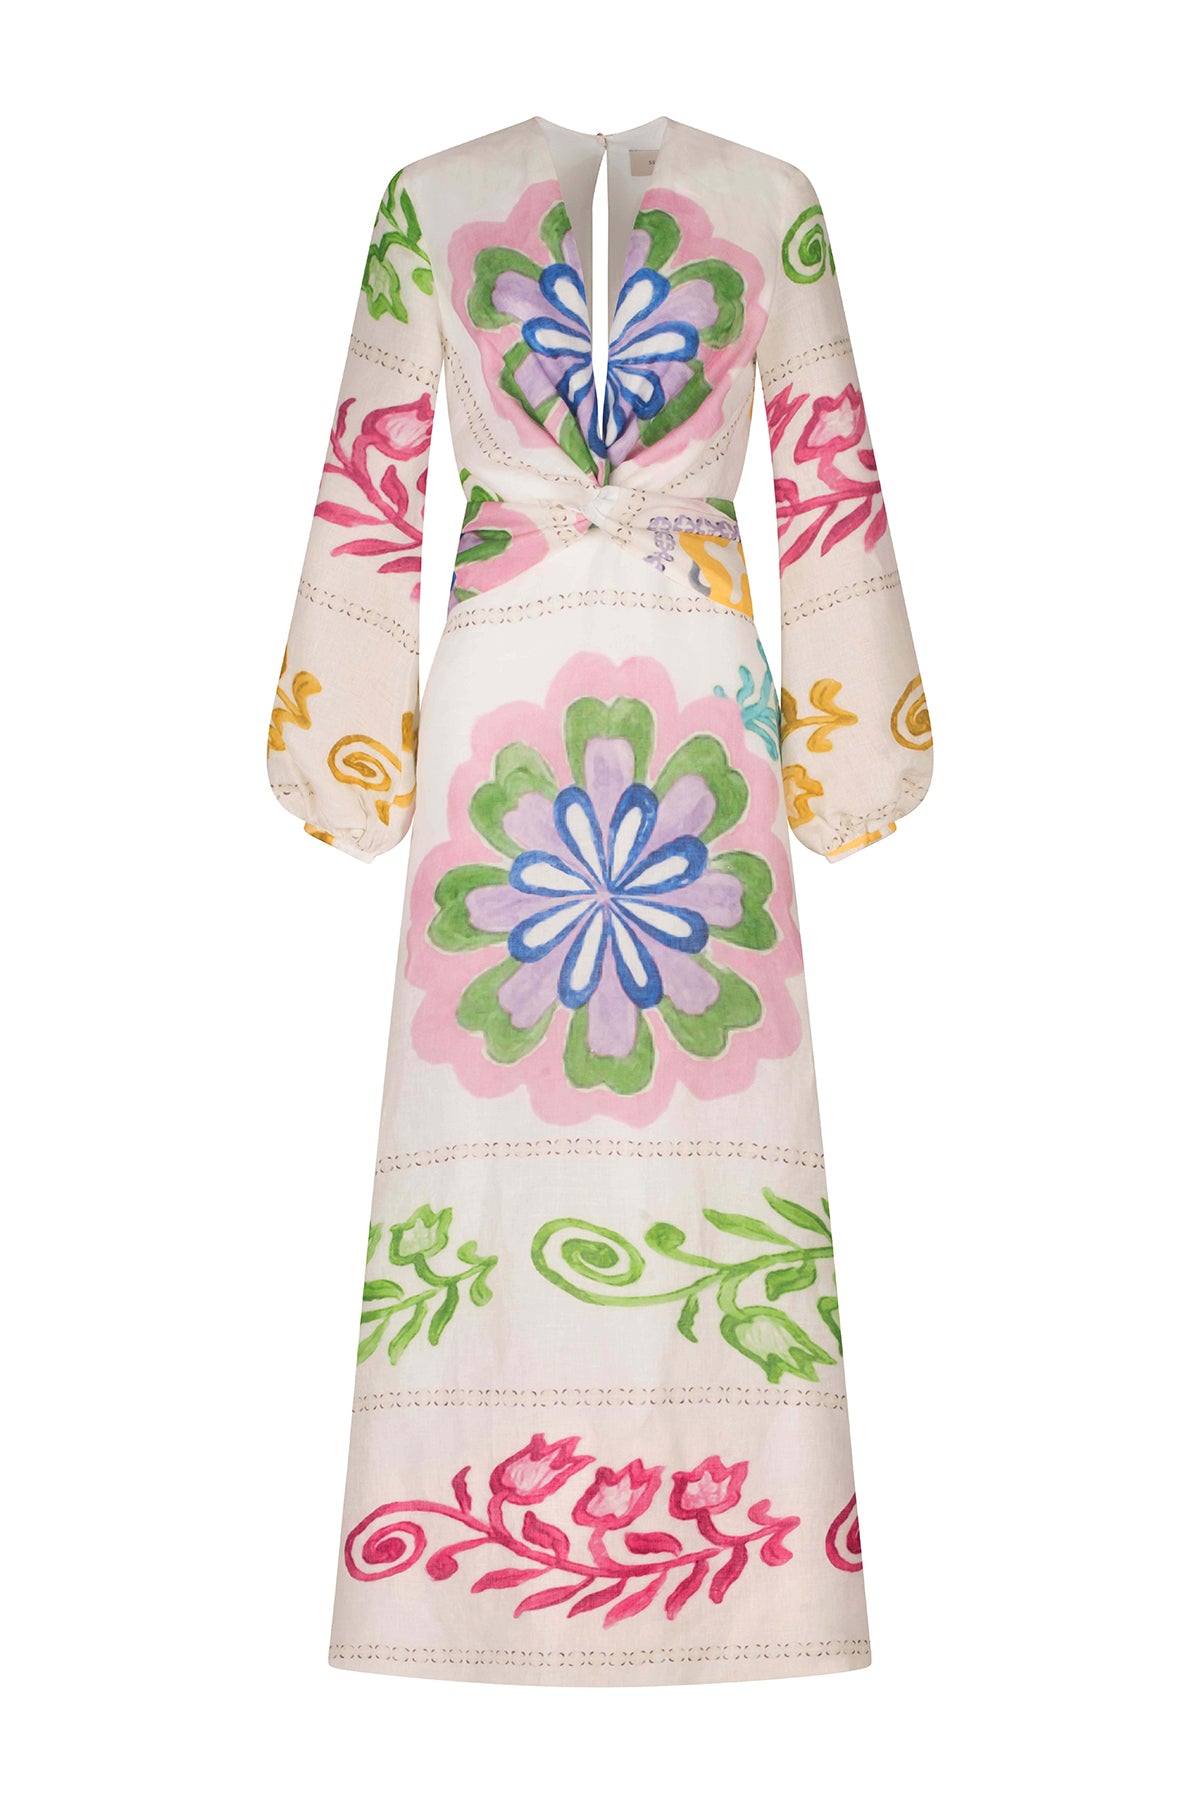 Battia Dress Multicolor Floral Print